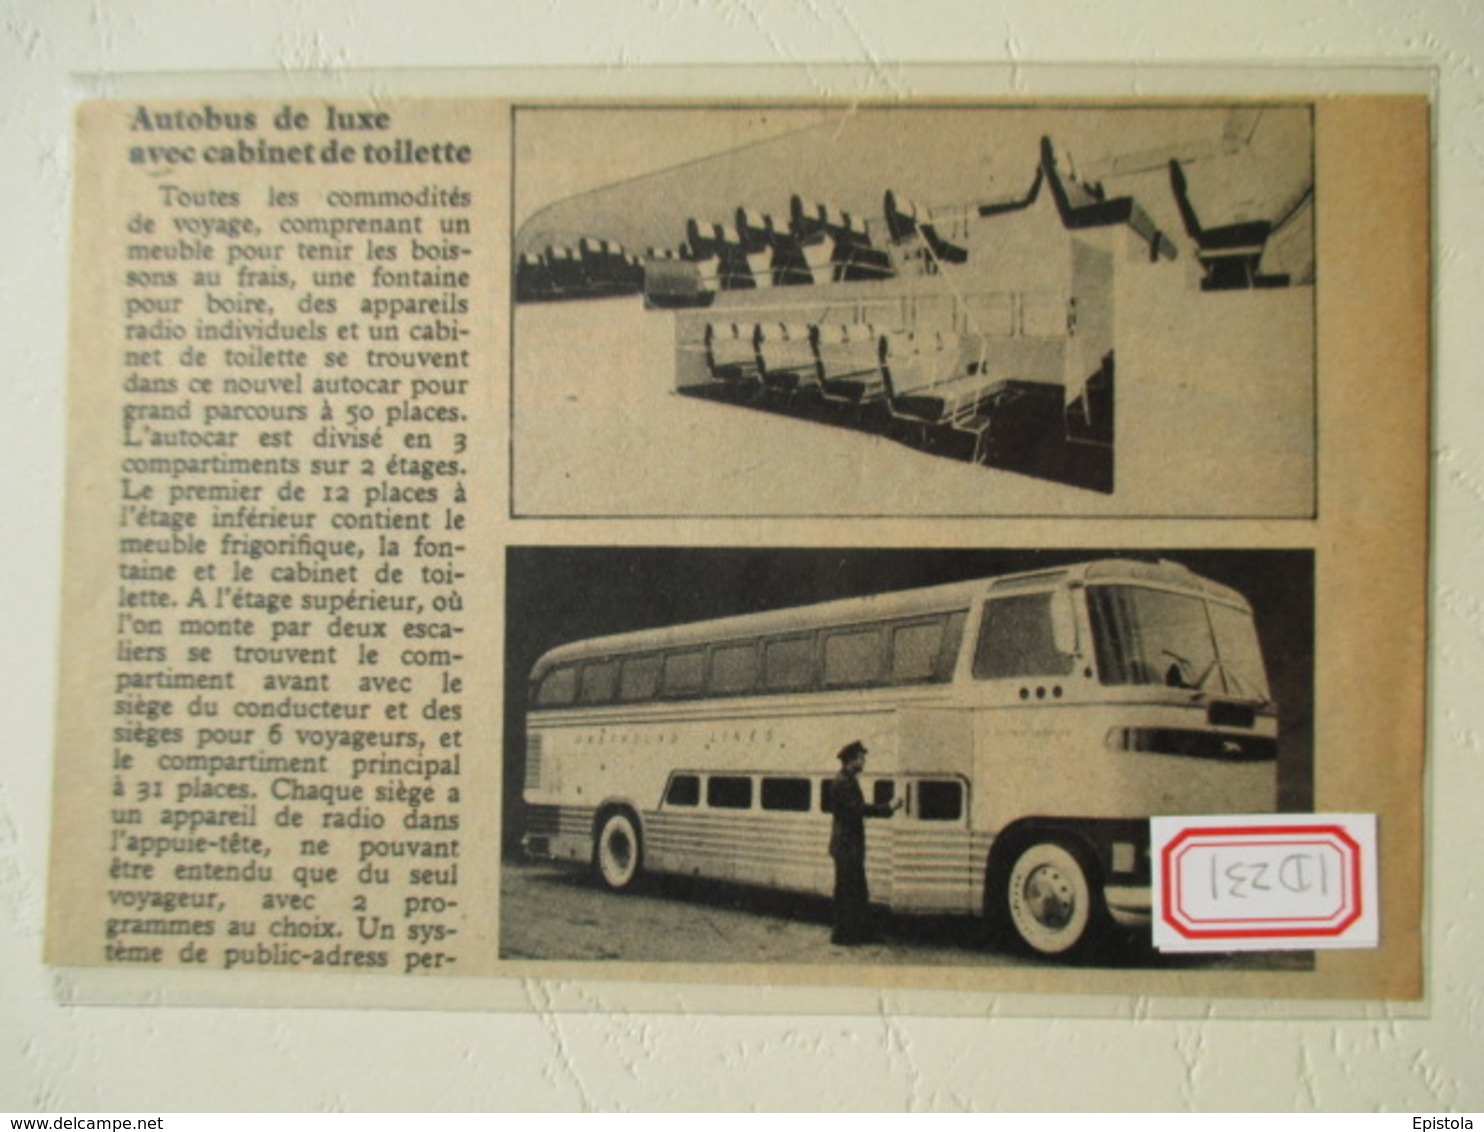 USA Transport Utilitaire - Autobus Greyhound Lines  - Coupure De Presse De 1948 - Camions